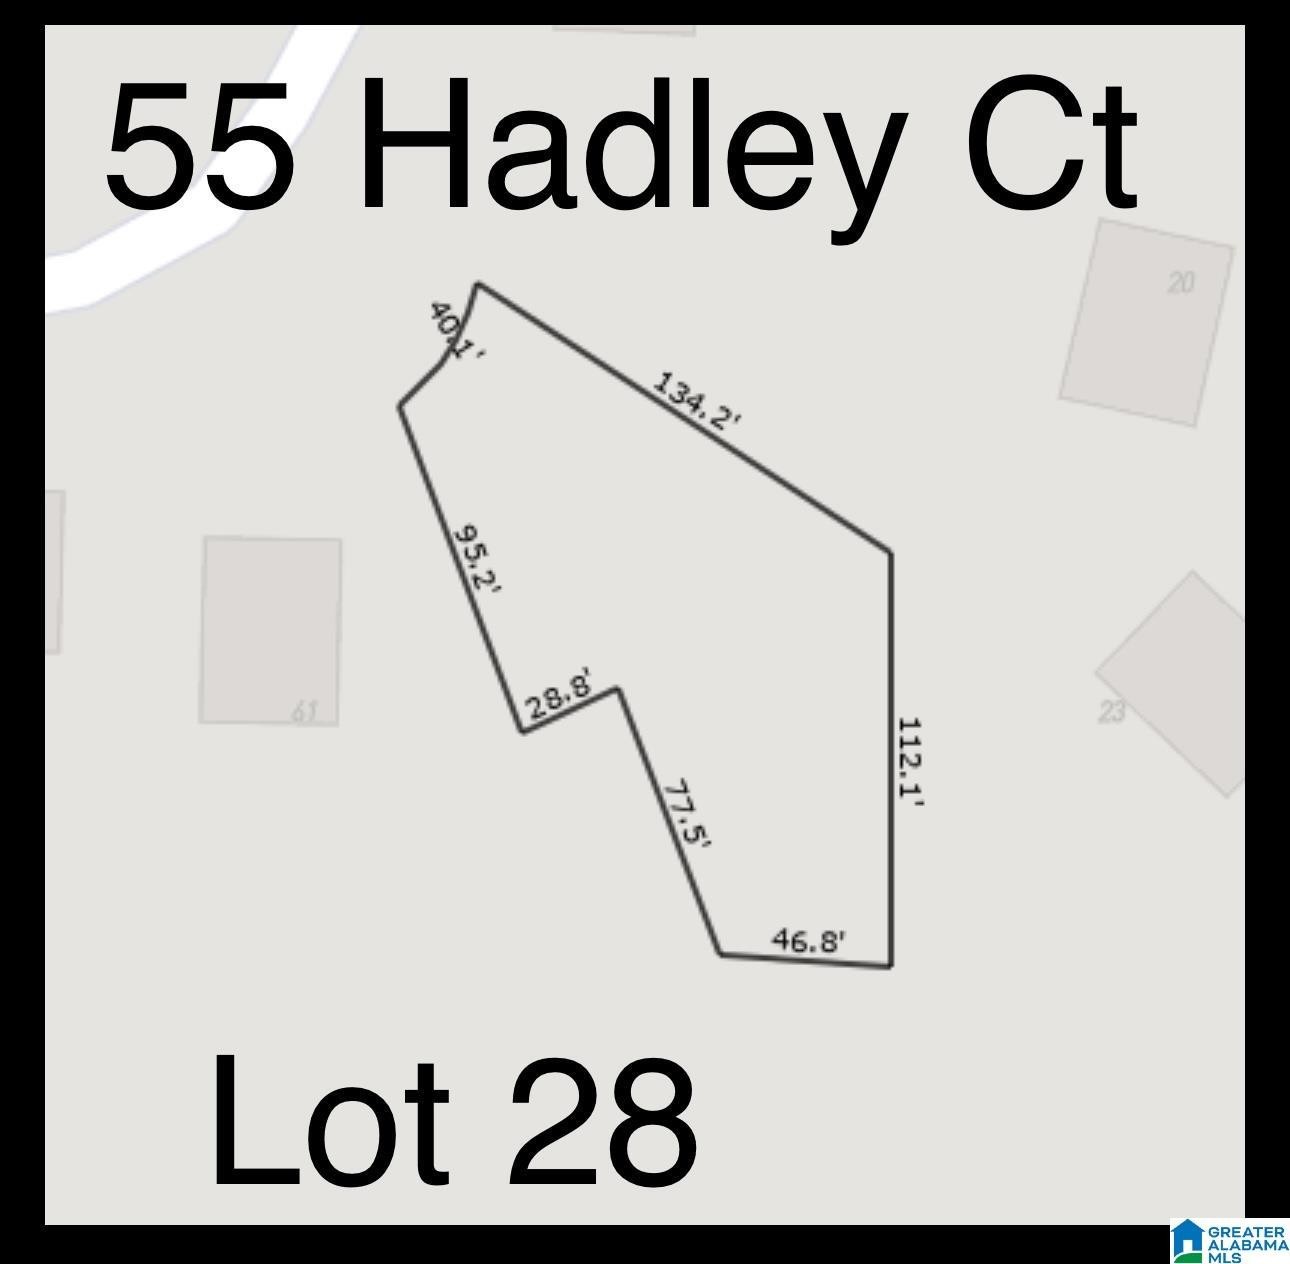 1. 55 Hadley Court